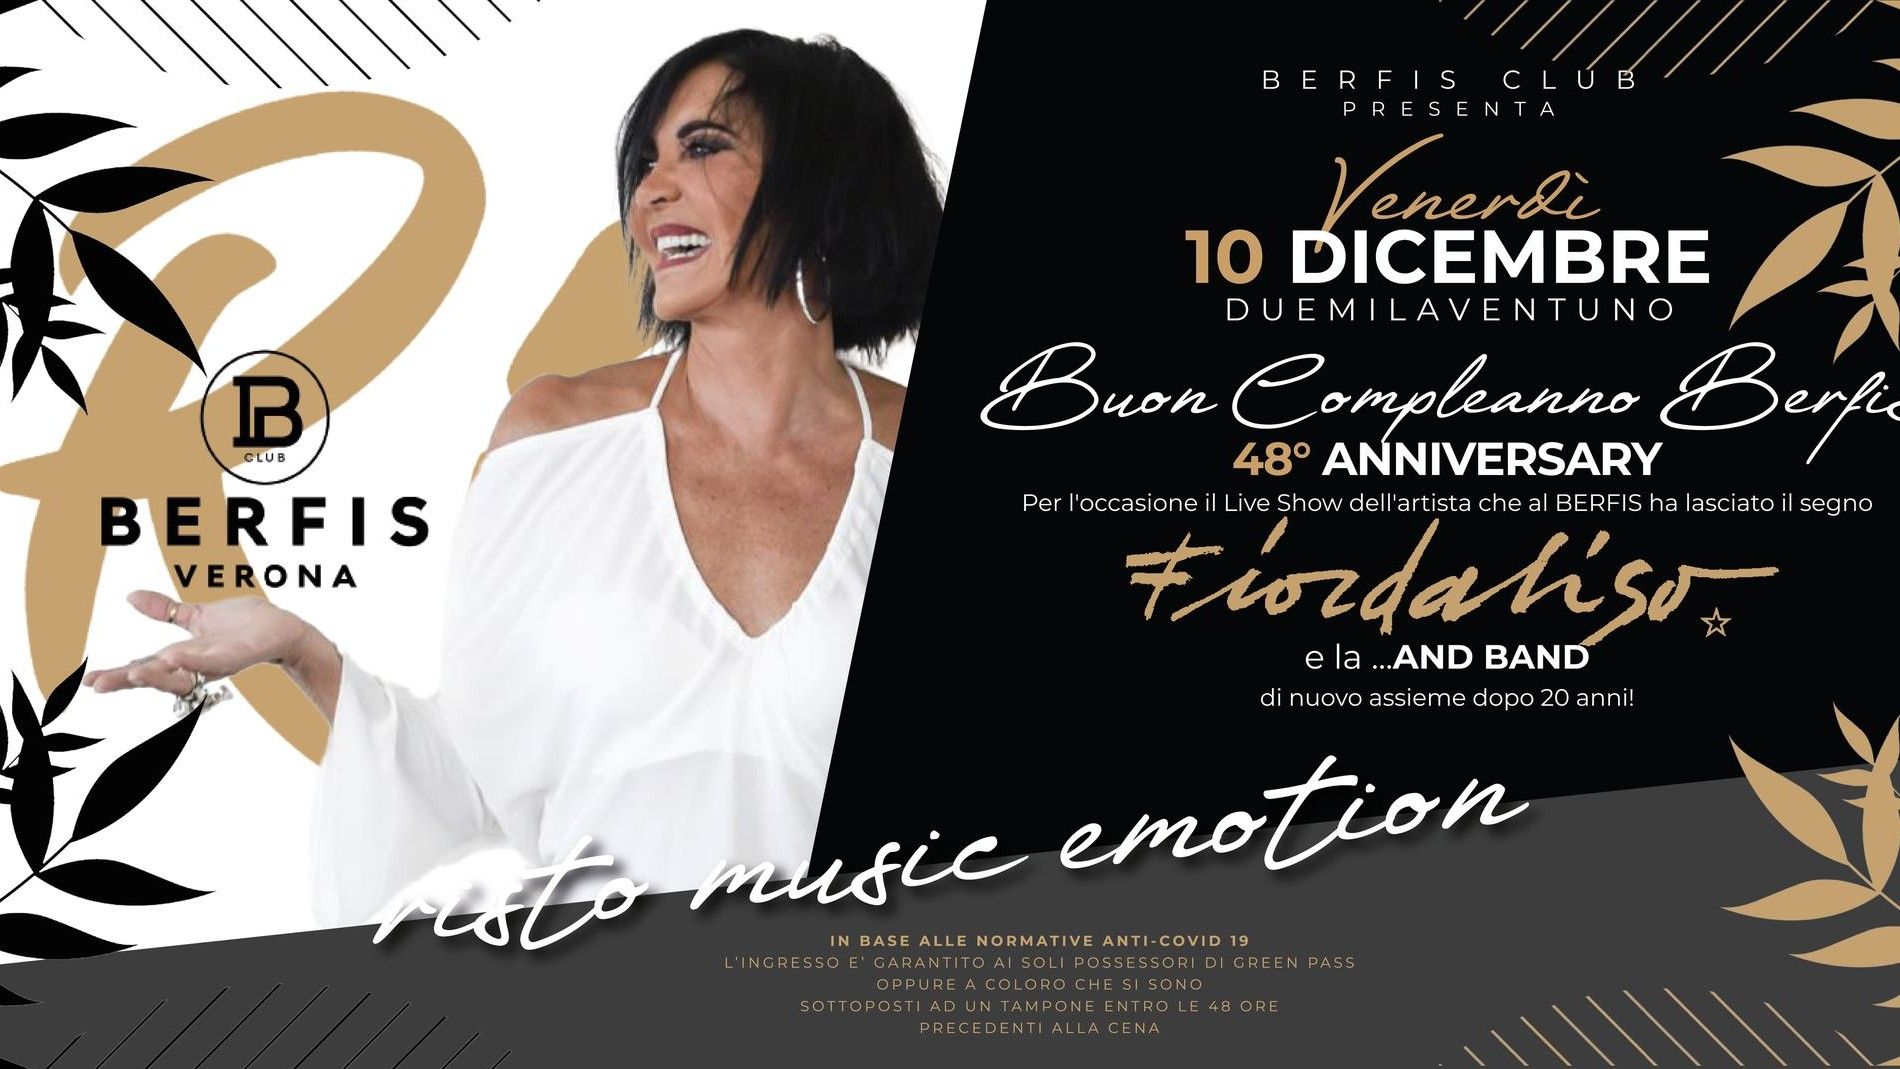 Buon Compleanno Berfis Club! 48° anniversary con Fiordaliso e la ...And Band